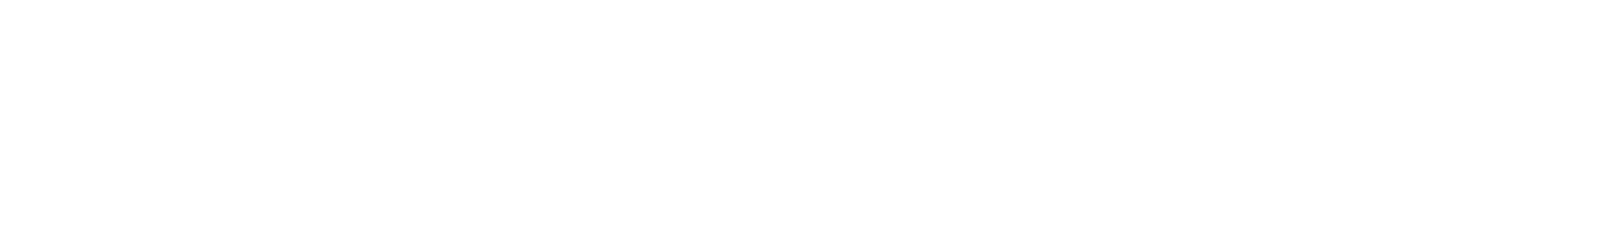 Squarespace logo grand pour les fonds sombres (PNG transparent)